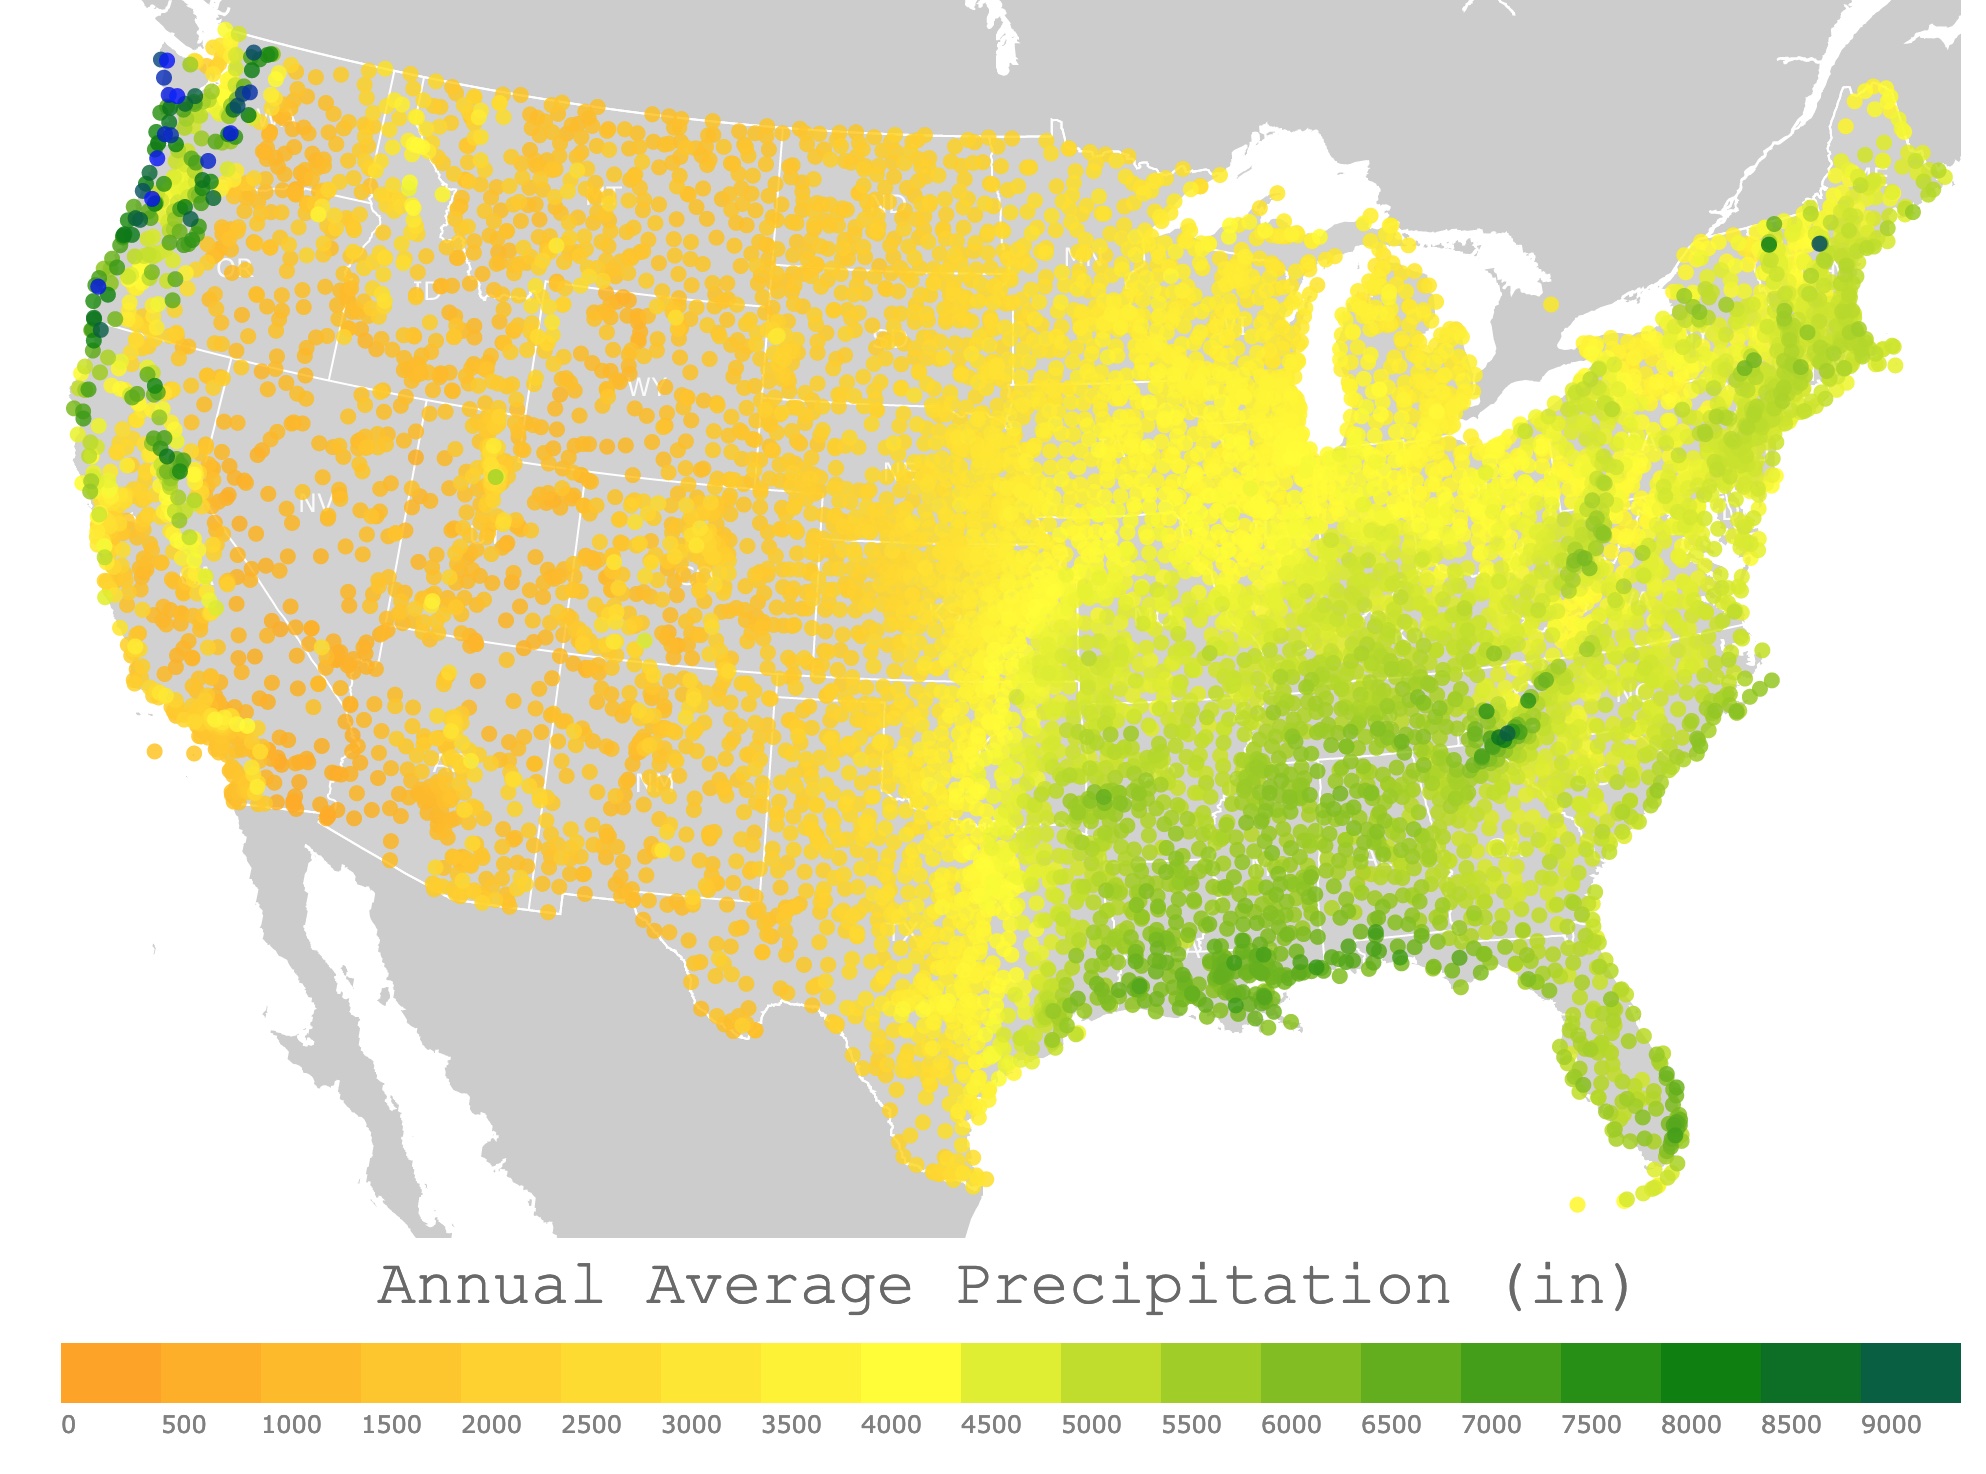 Map of annual precipitation average in the U.S.A. 